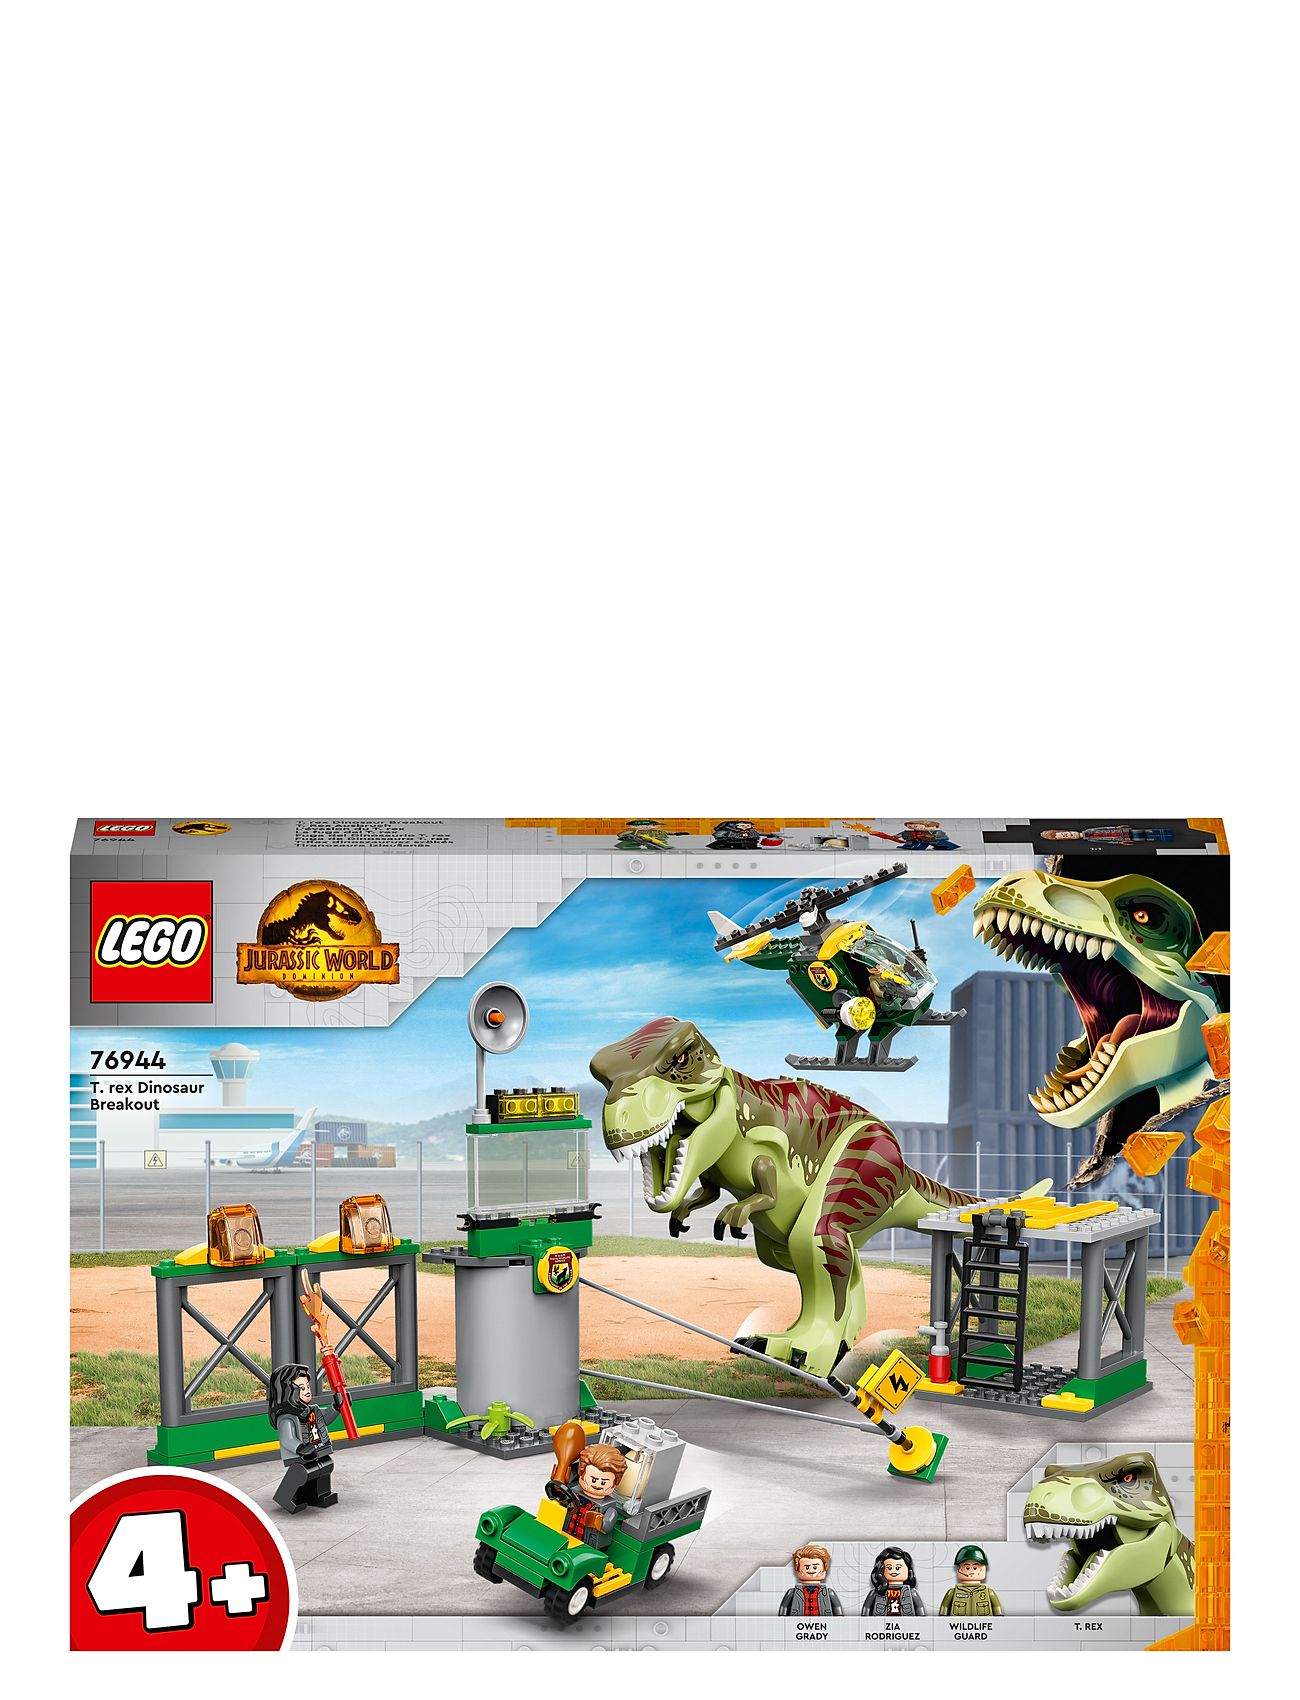 T. Rex Dinosaur Breakout Toy Set Toys Lego Toys Lego jurassic World Multi/patterned LEGO